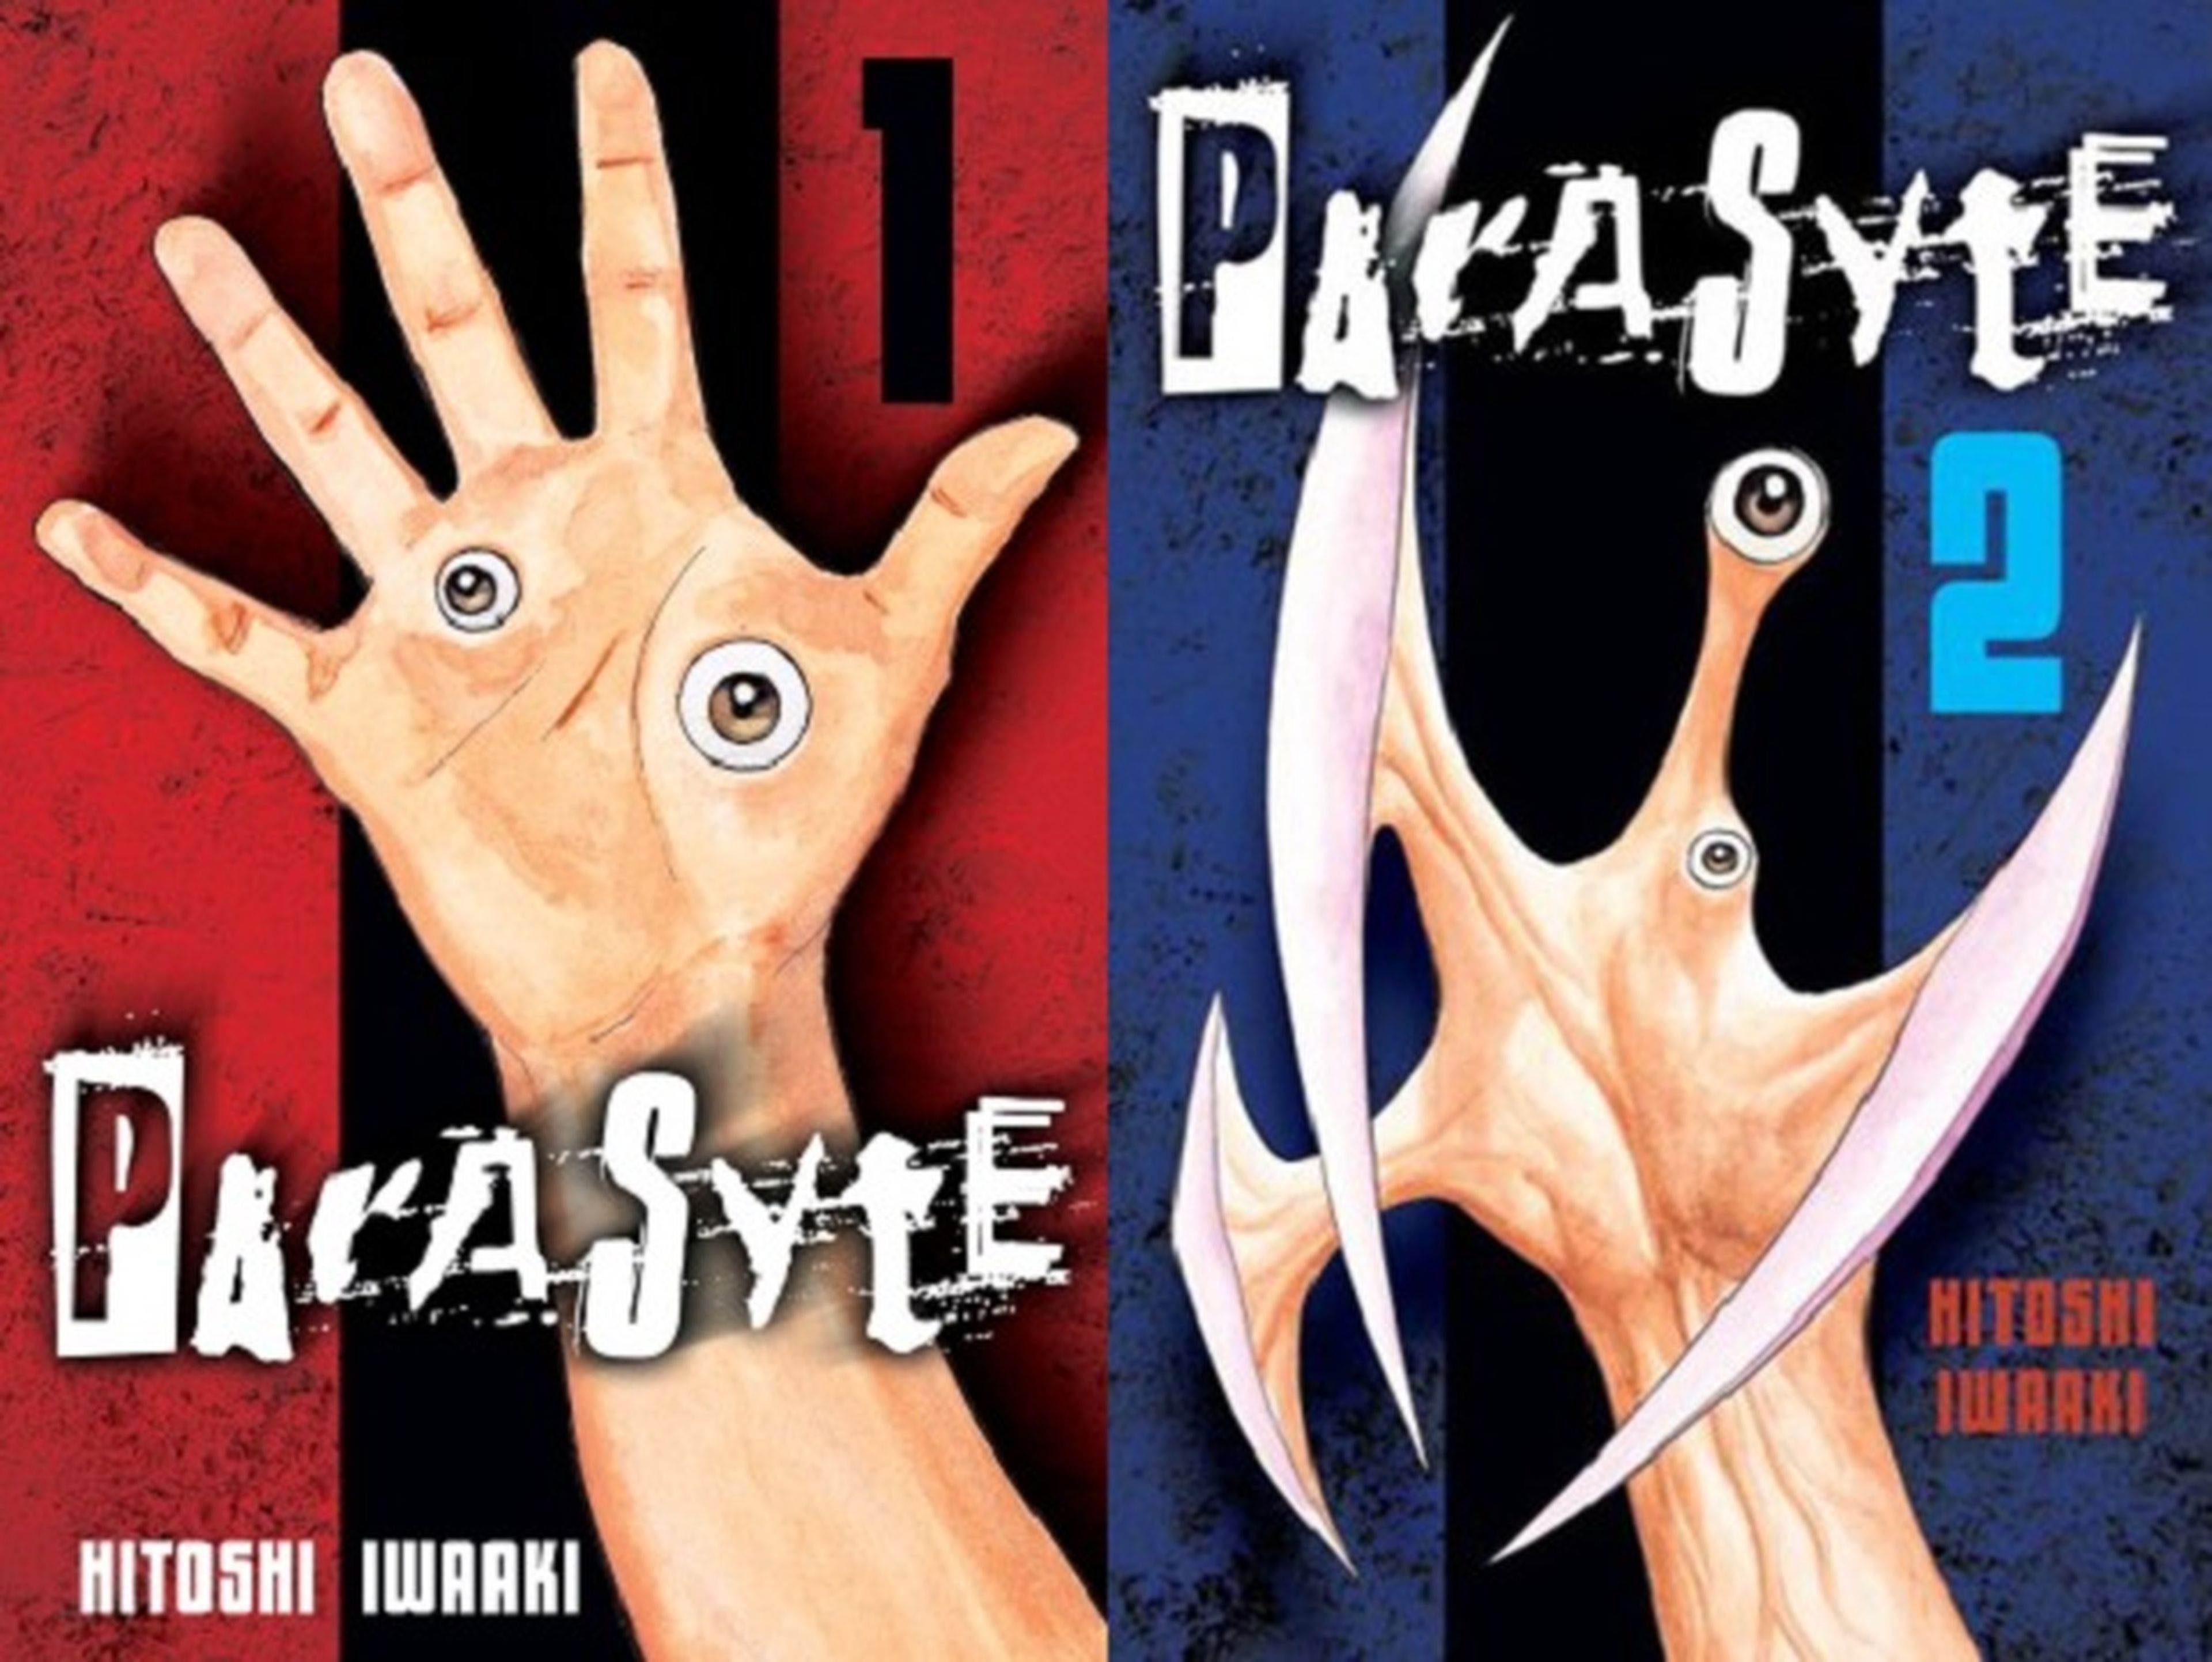 En octubre se estrena el anime de terror Parasyte